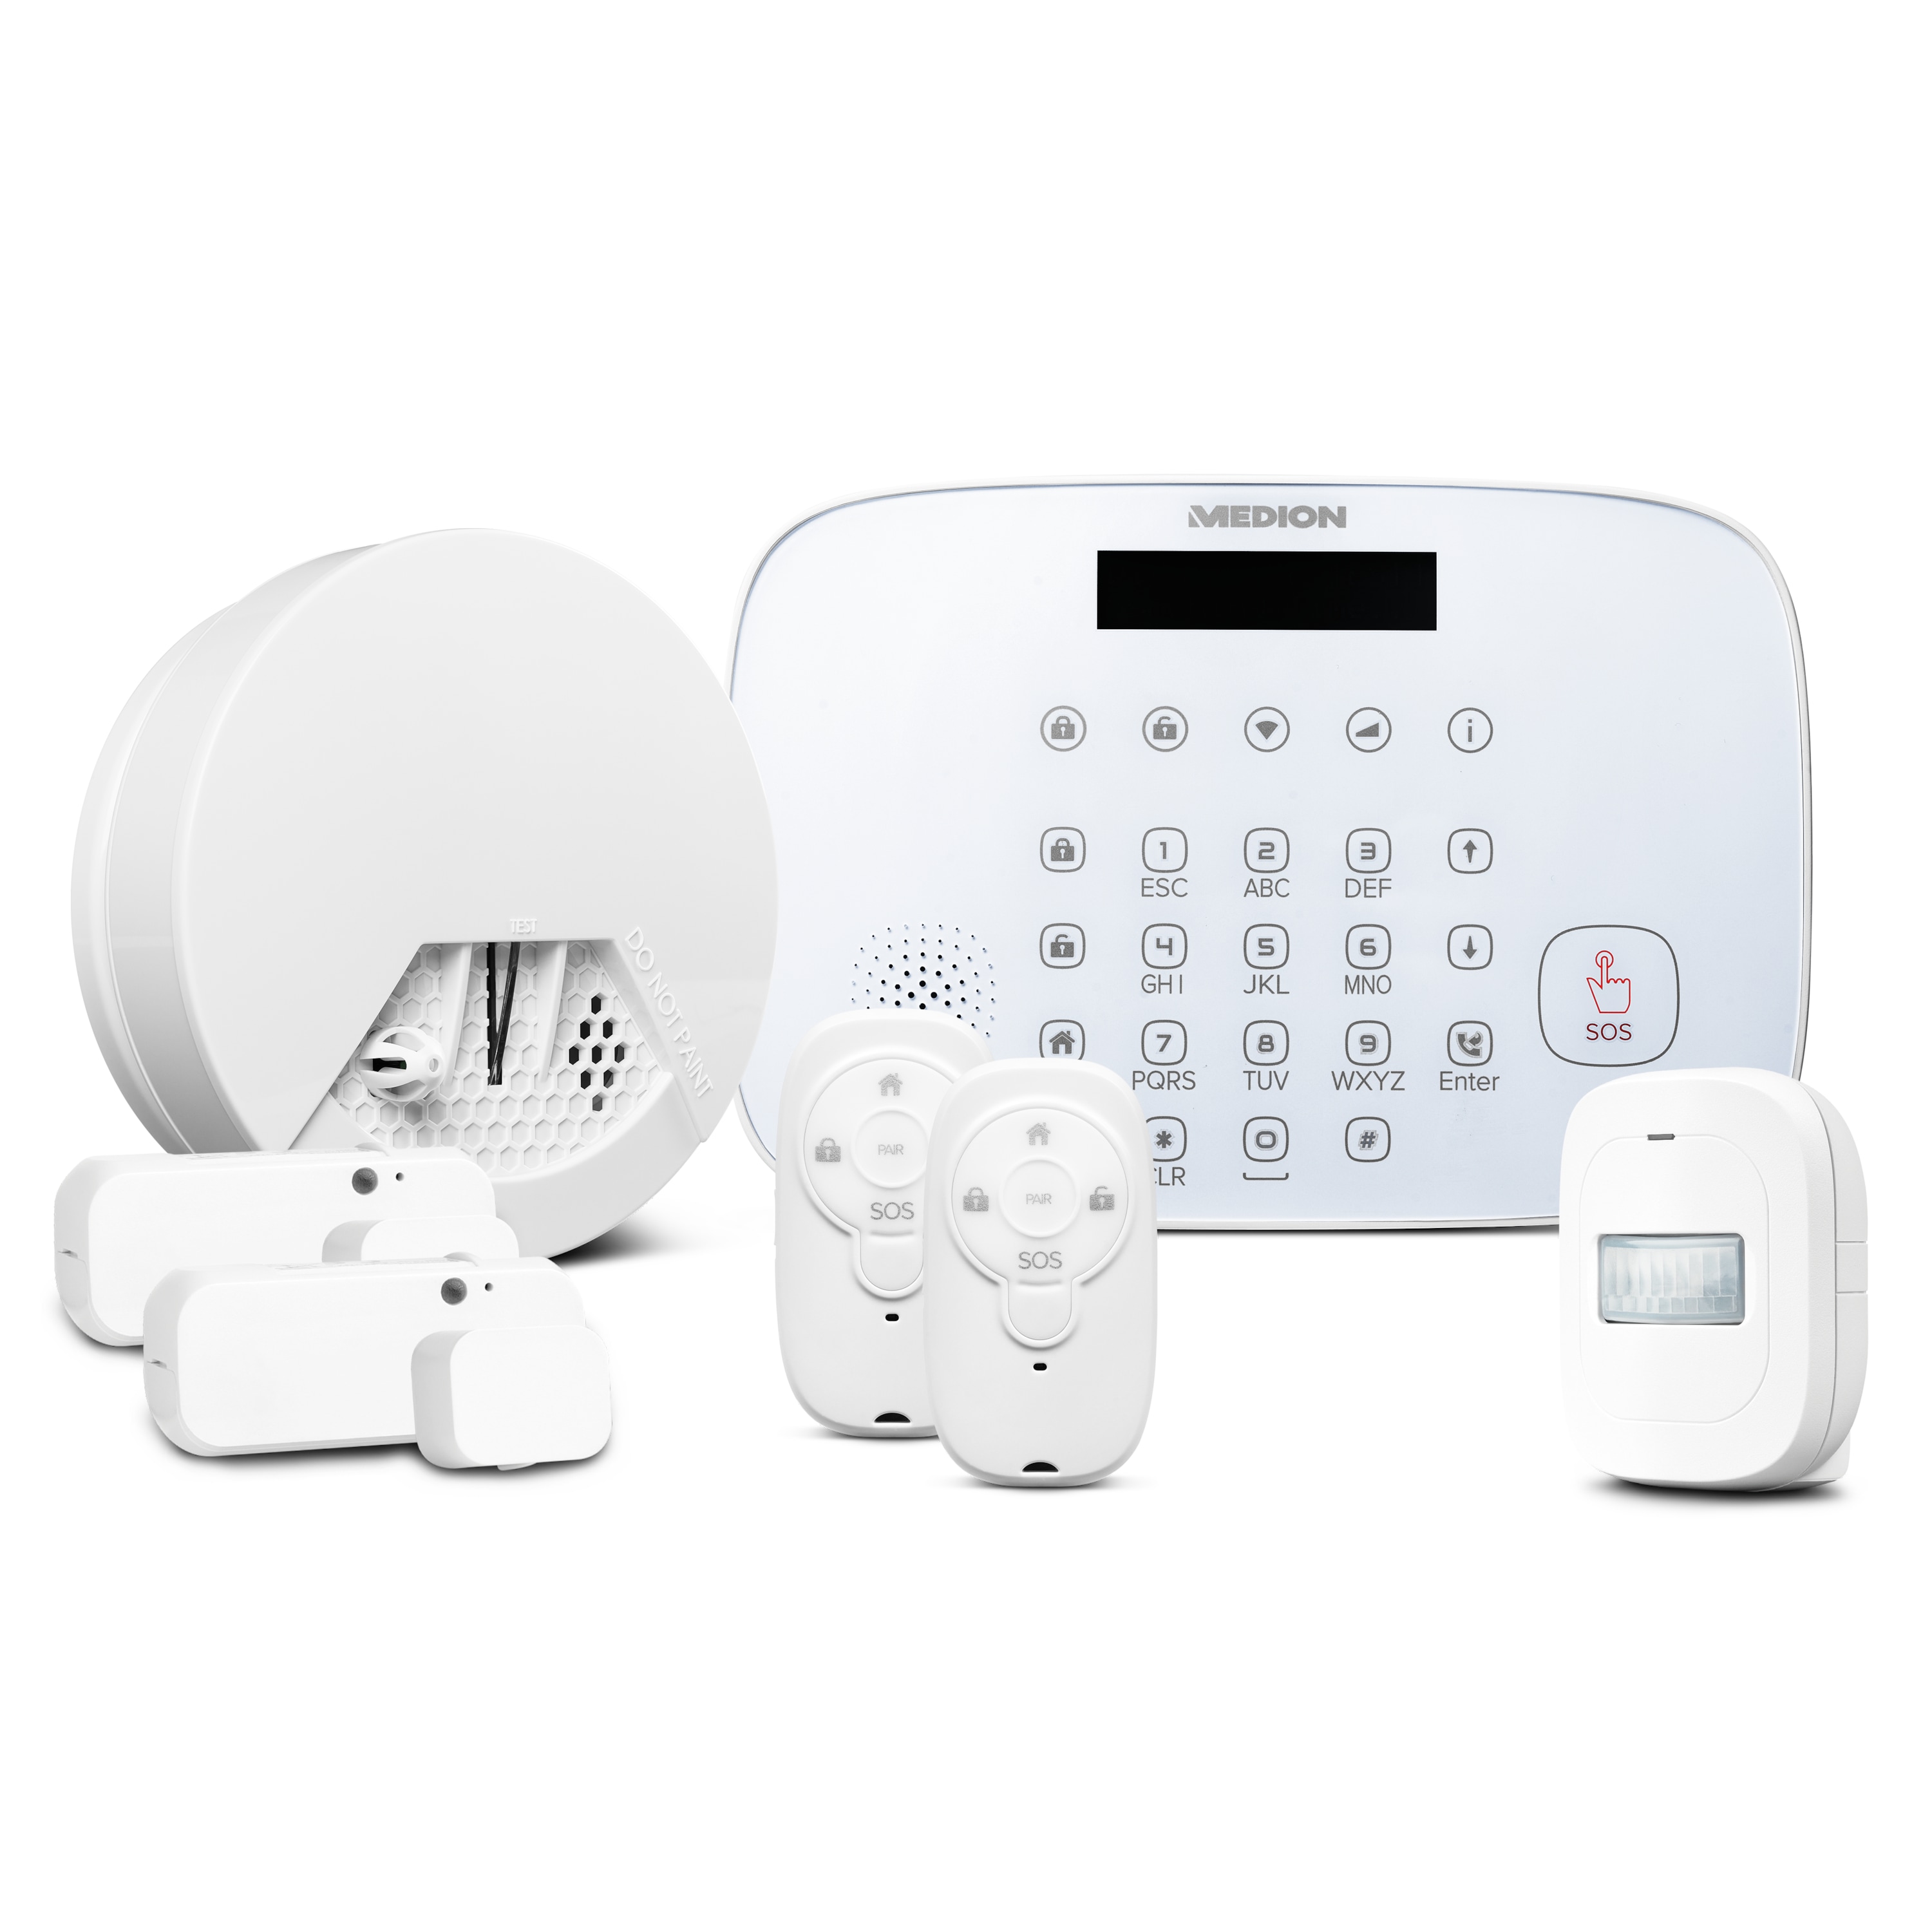 MEDION® Smart Home Alarmsystem Zentrale P85731 inkl. umfangreichem Zubehör - Artikelset 2